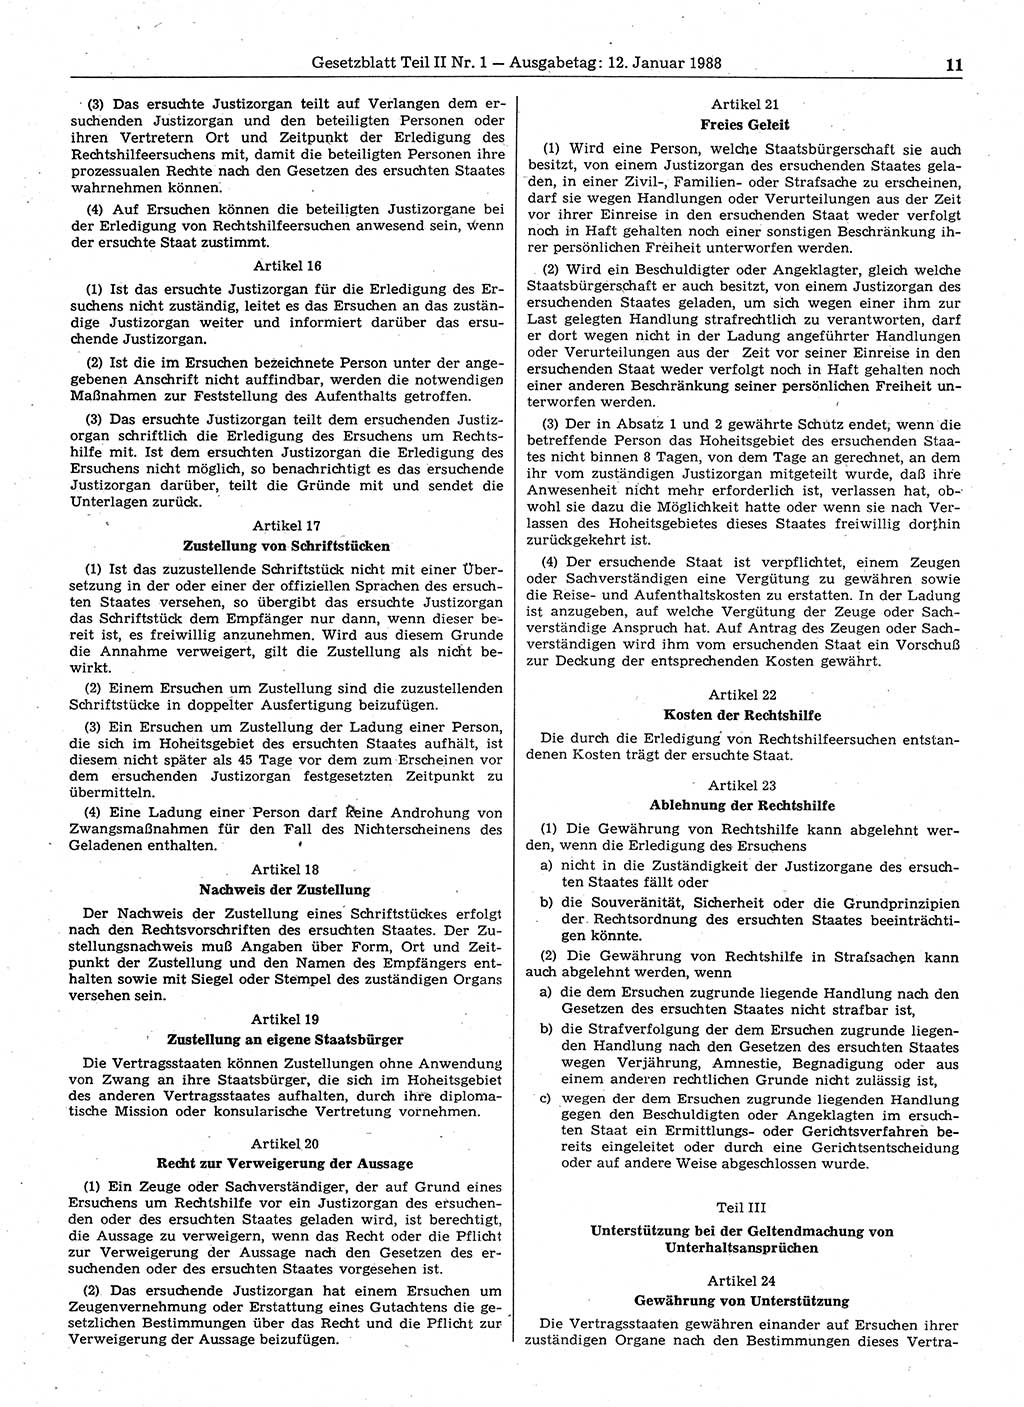 Gesetzblatt (GBl.) der Deutschen Demokratischen Republik (DDR) Teil ⅠⅠ 1988, Seite 11 (GBl. DDR ⅠⅠ 1988, S. 11)